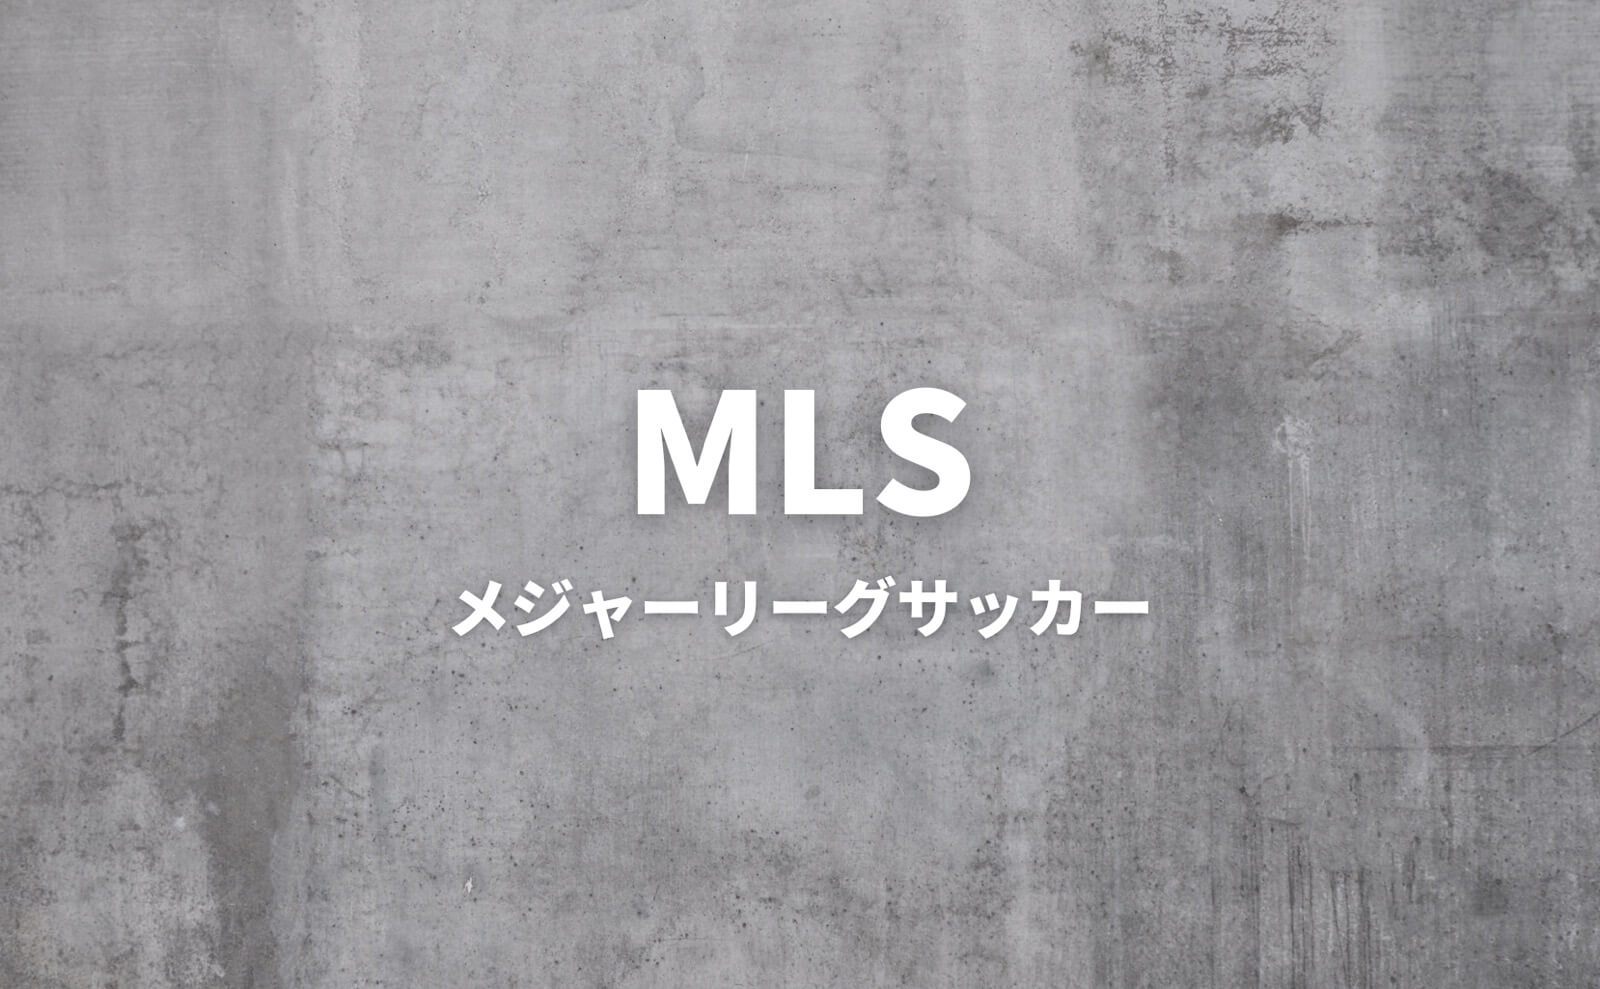 MLS メジャーリーグサッカー